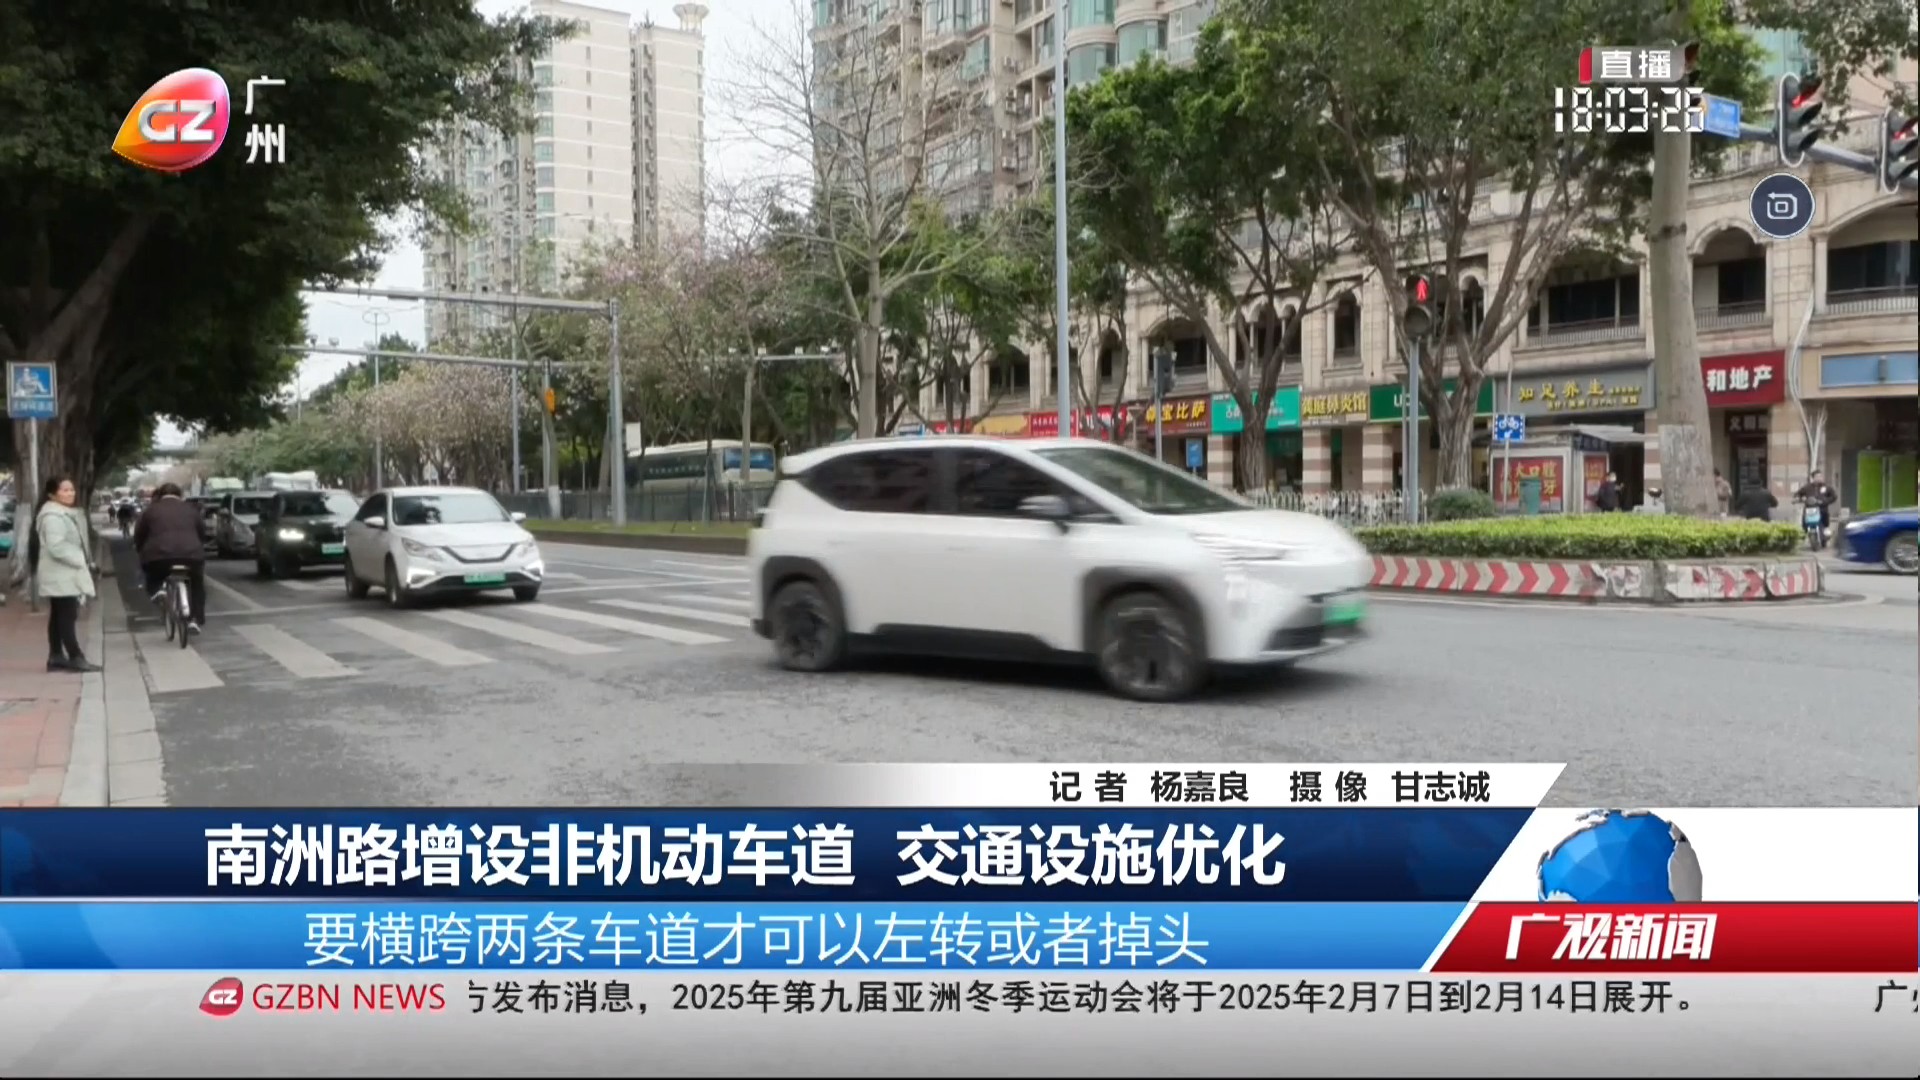 广州台综合频道 广视新闻 南洲路增设非机动车道 交通设施优化